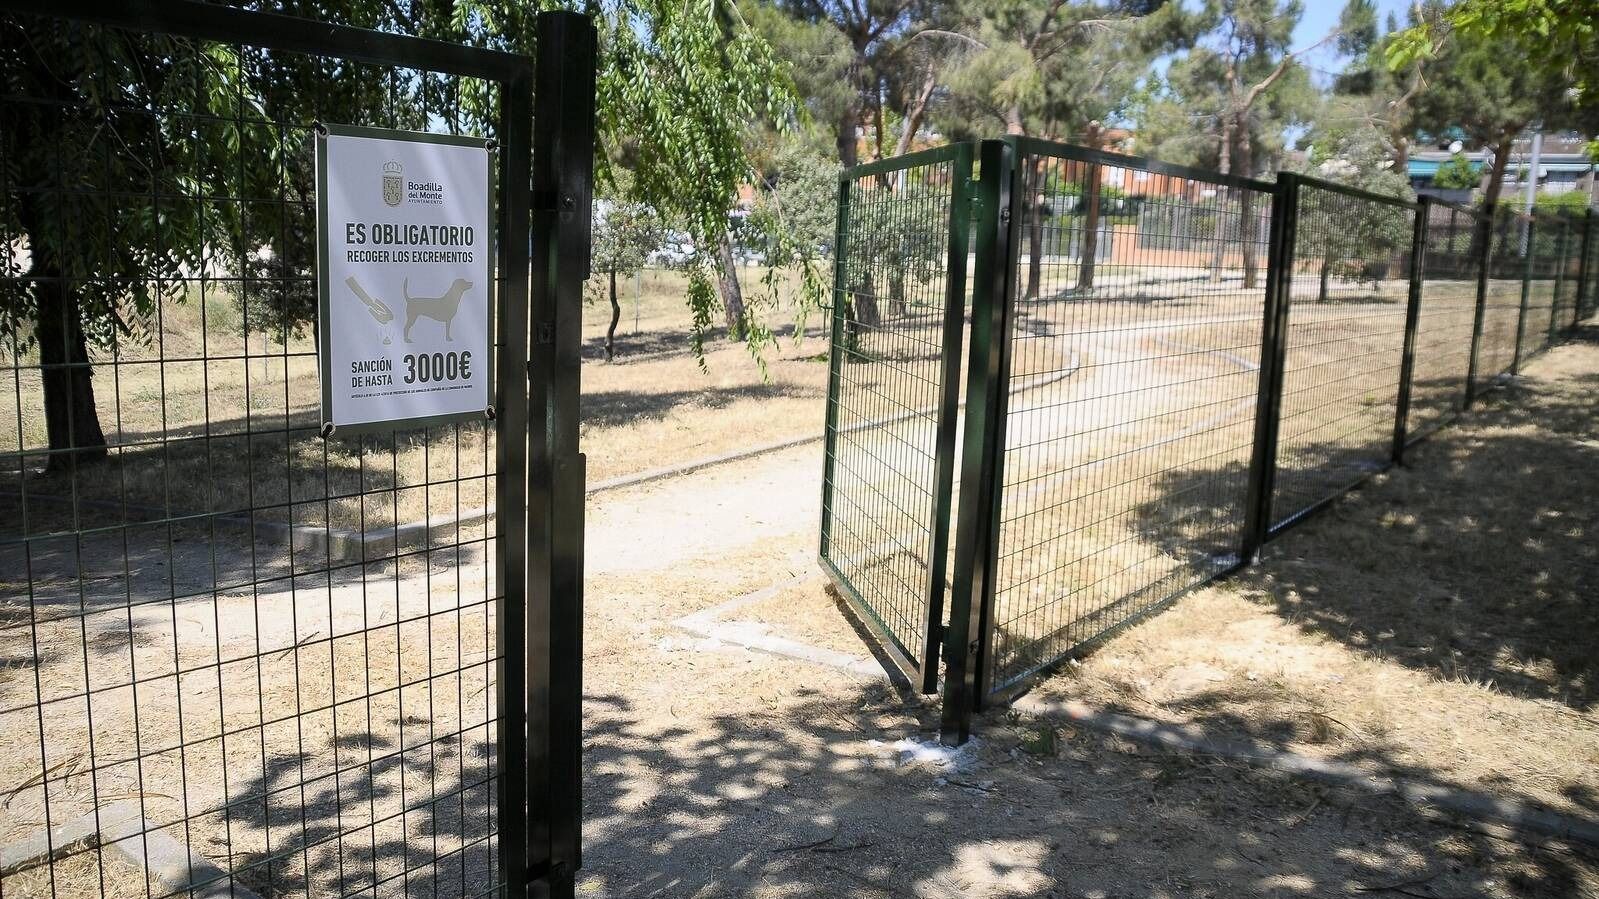 Sanciones de hasta 3000 euros por no recoger los excrementos caninos en Boadilla